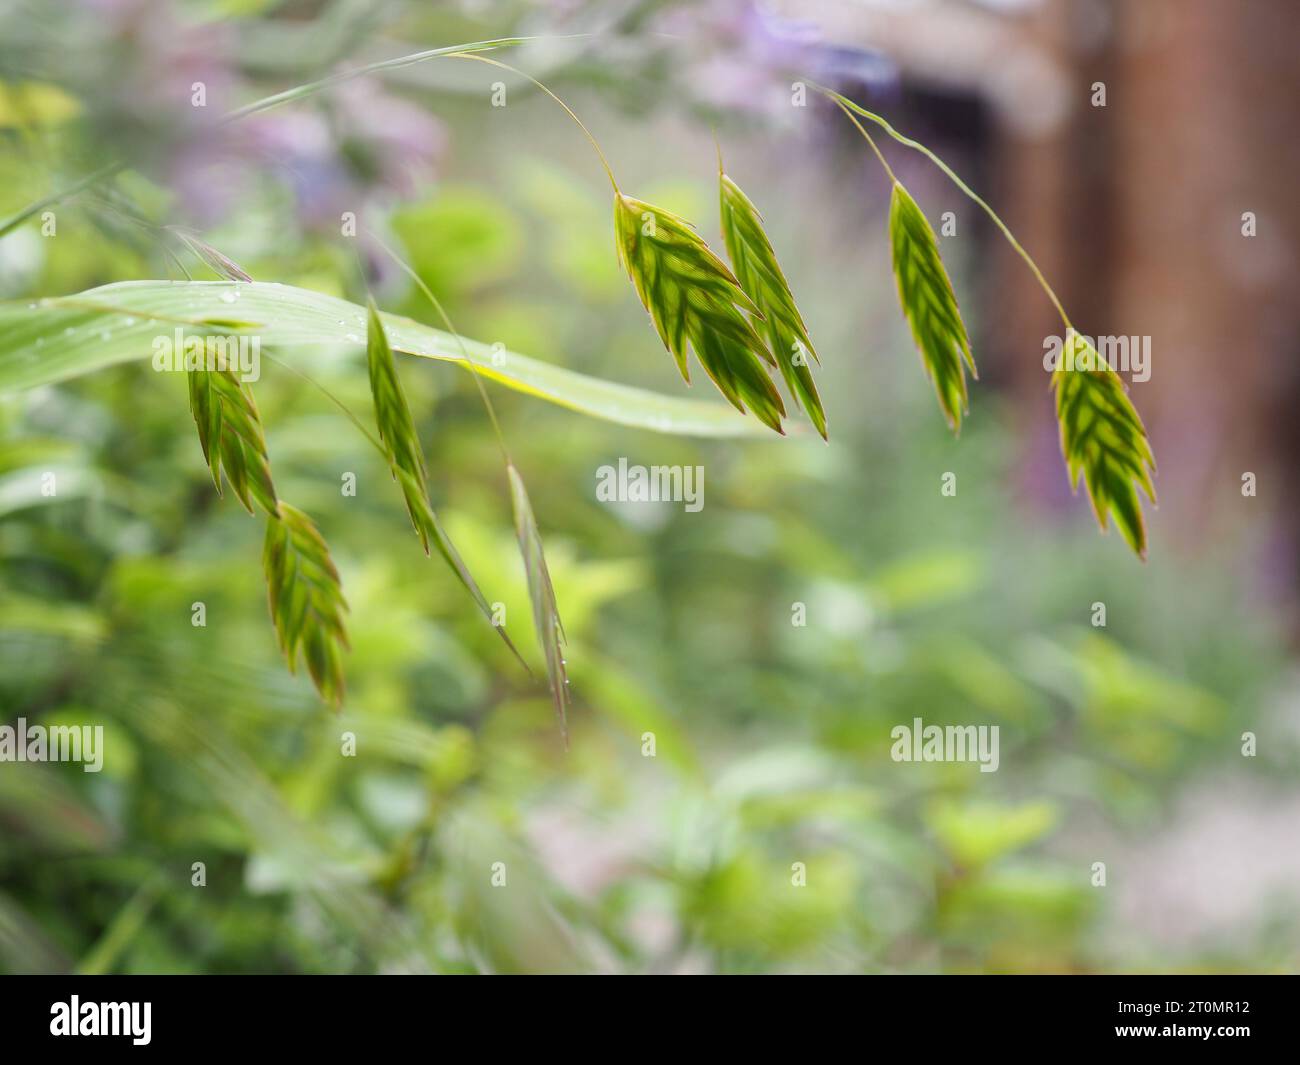 Vue rétroéclairée et en gros plan de la fleur d'herbe plate de Chasmanthium latifolium (avoine sauvage d'Amérique du Nord), une herbe vivace pour la coupe et le séchage Banque D'Images